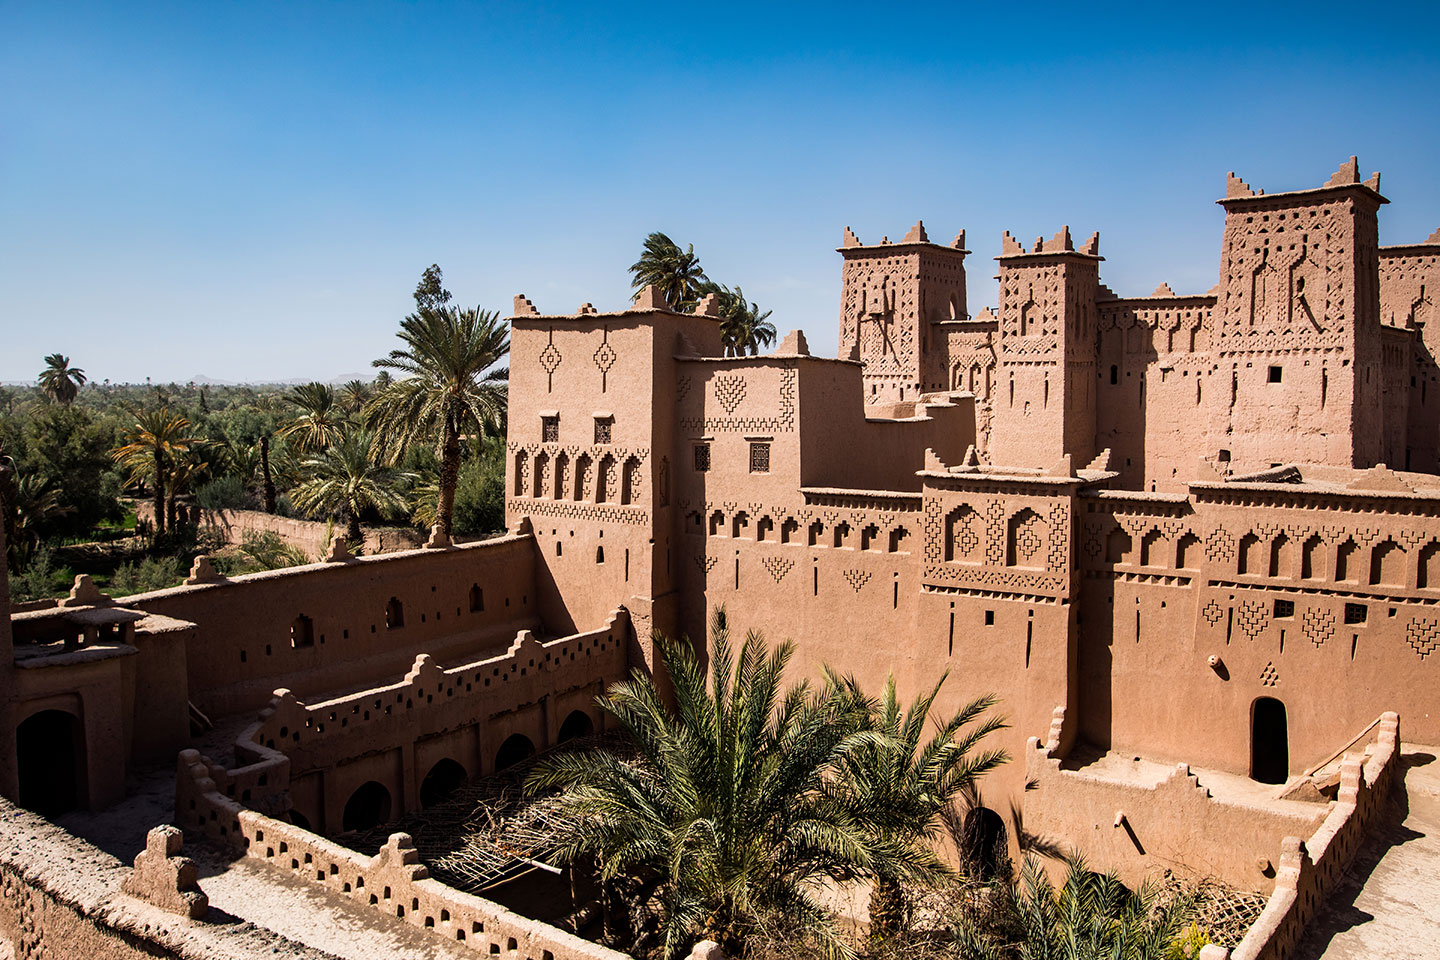 The Kasbah of Skoura in Morocco